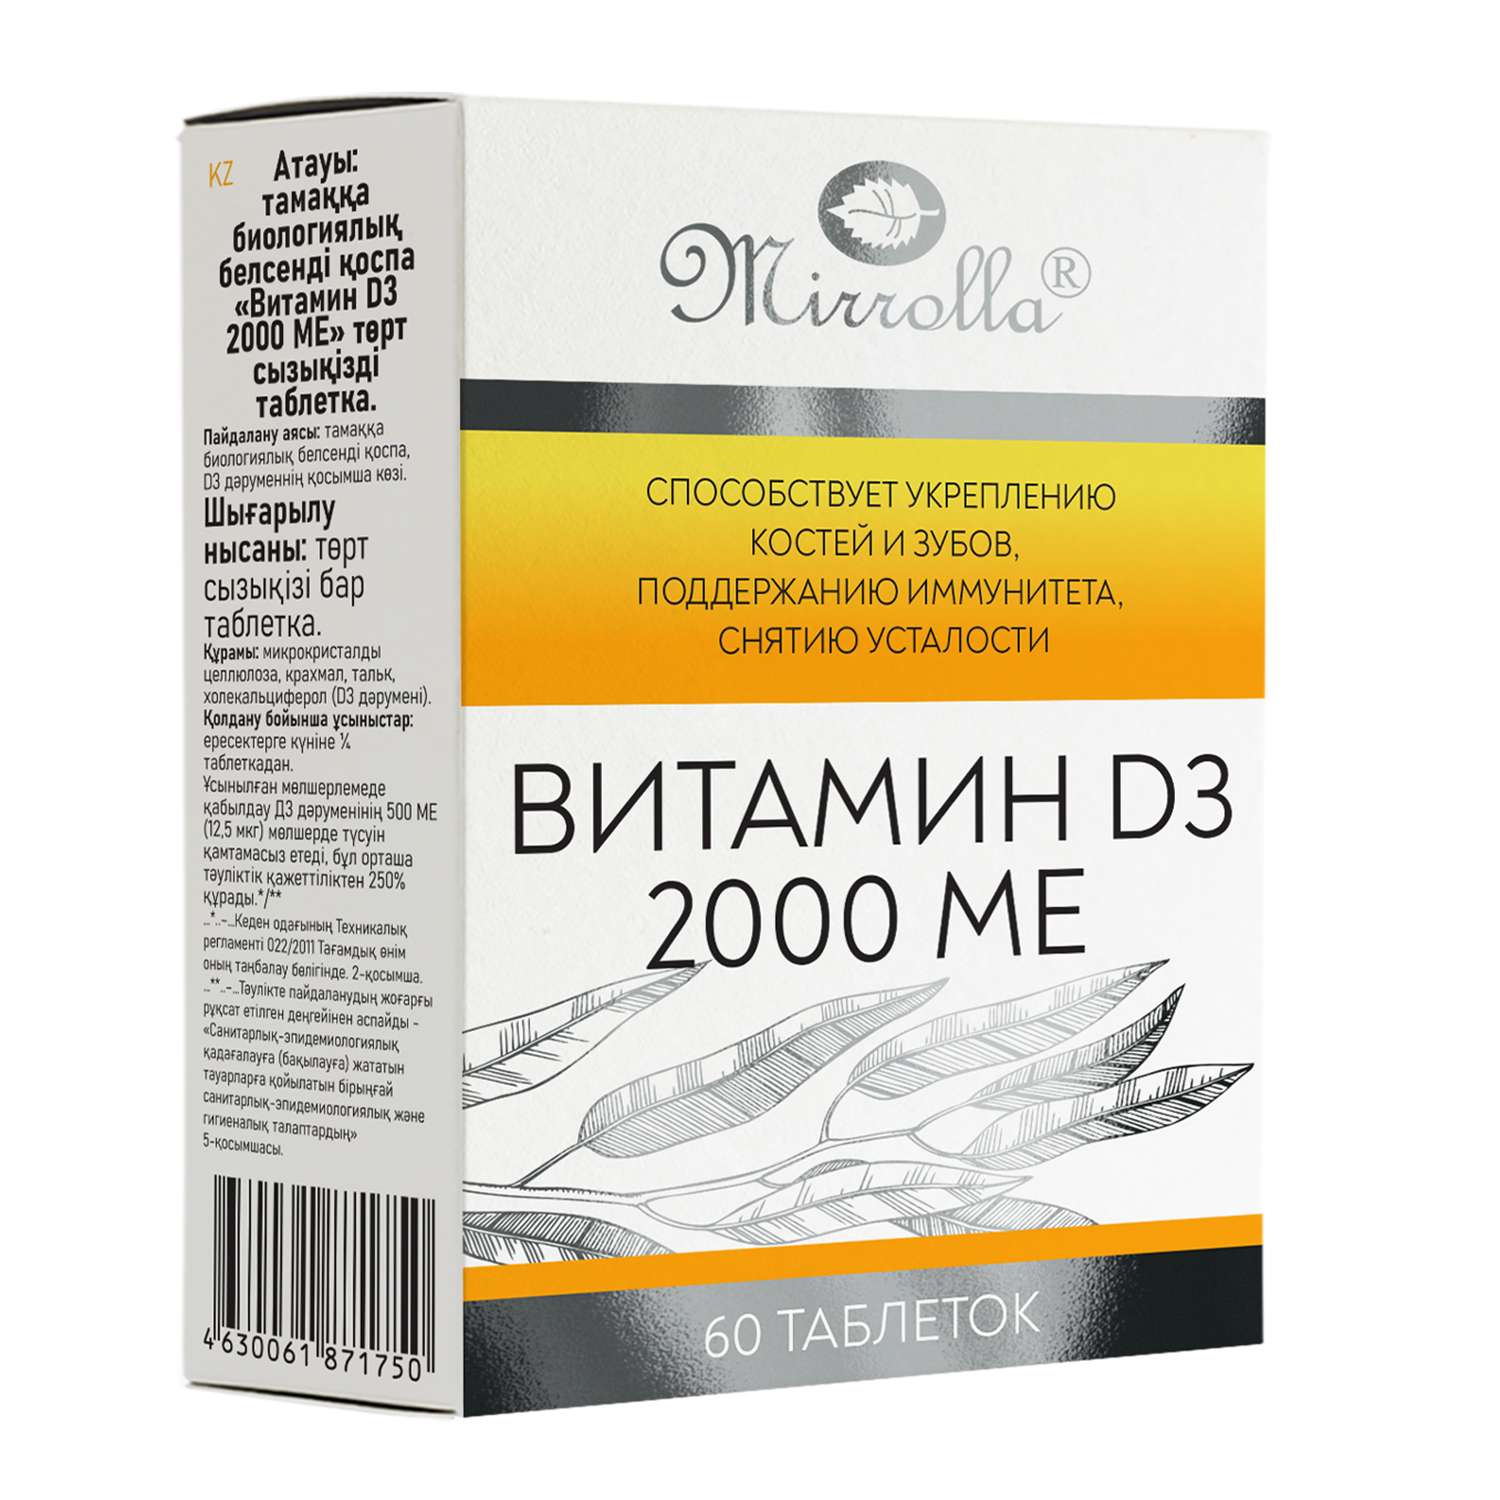 Биологически активная добавка Mirrolla Витамин D3 2000МЕ*60таблеток - фото 1